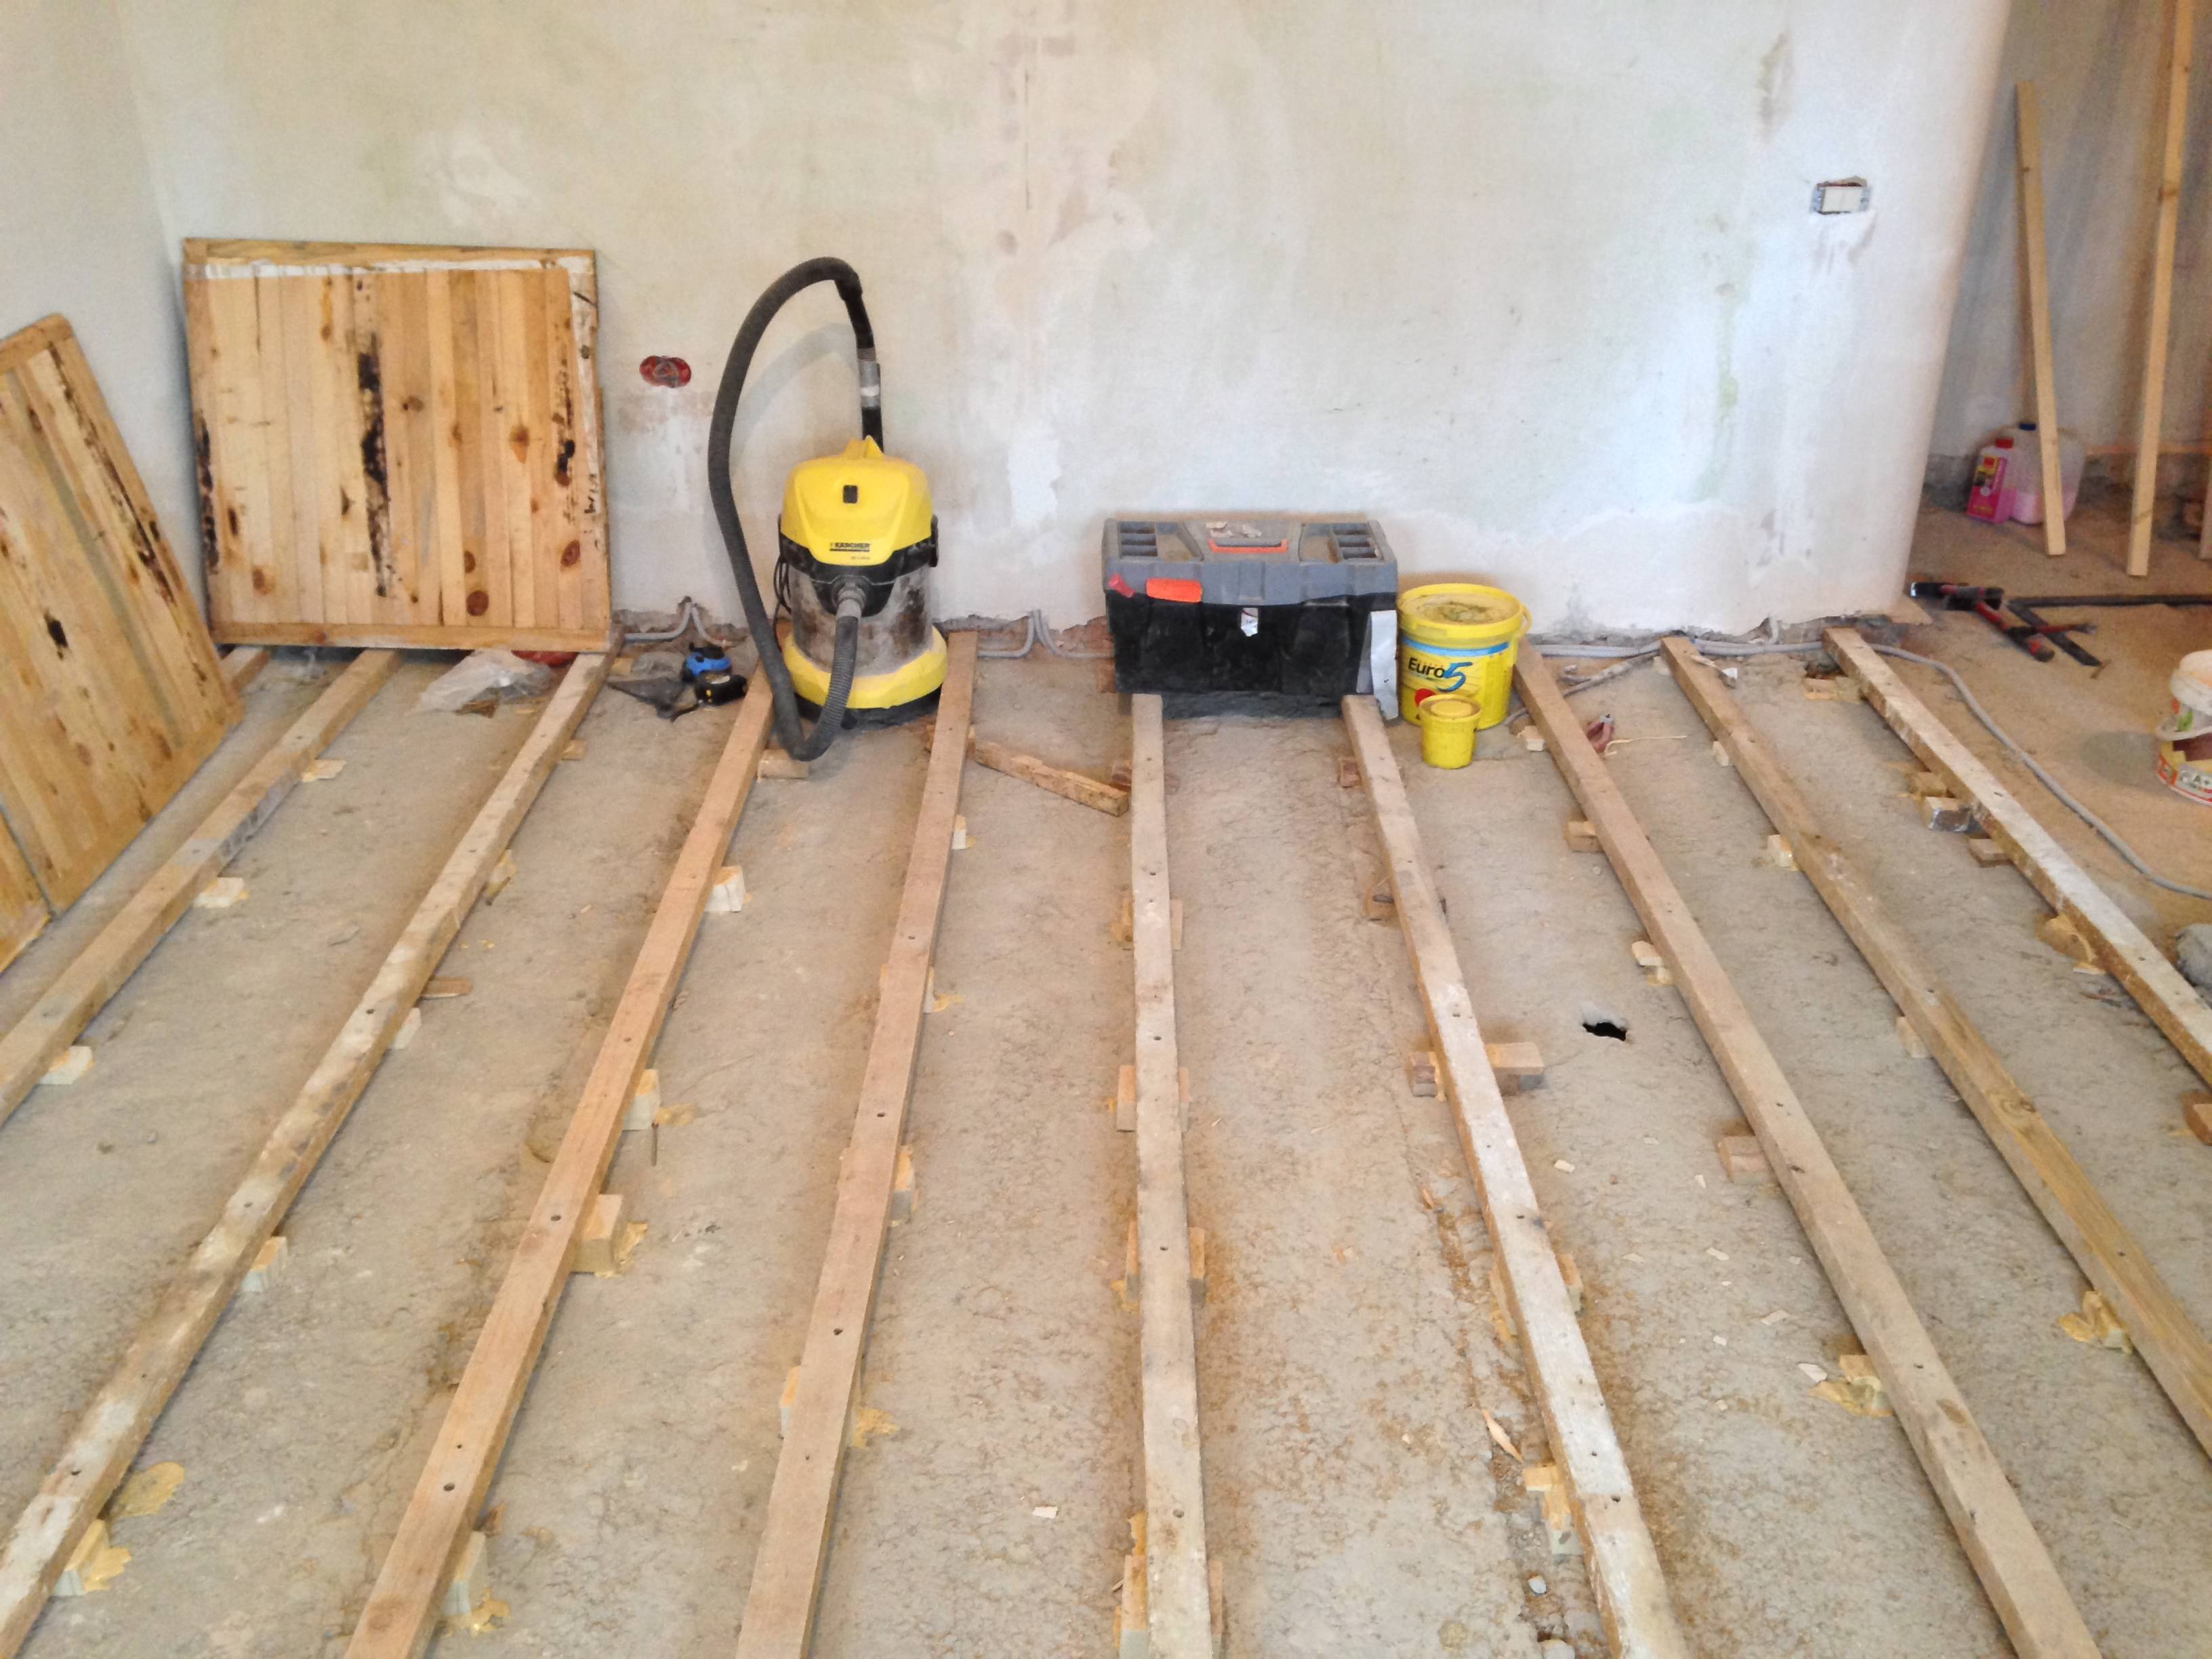 Как выполнить замену деревянных полов в квартире на бетонные, причины и последовательность работ